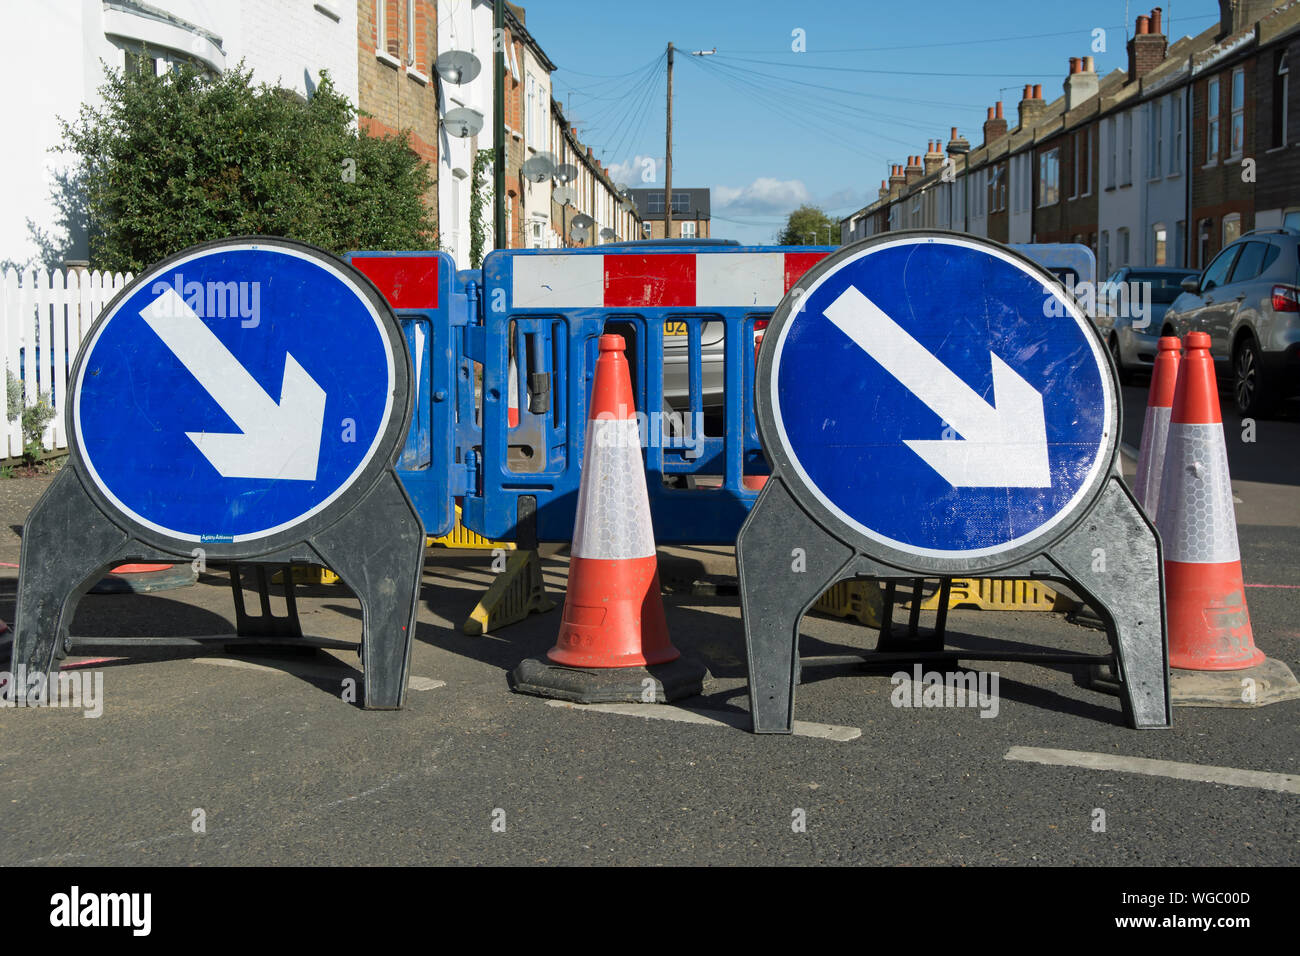 British azul y blanco, manténgase a la derecha, las señales de la carretera en una reparación de caminos en Twickenham, Middlesex, Inglaterra Foto de stock